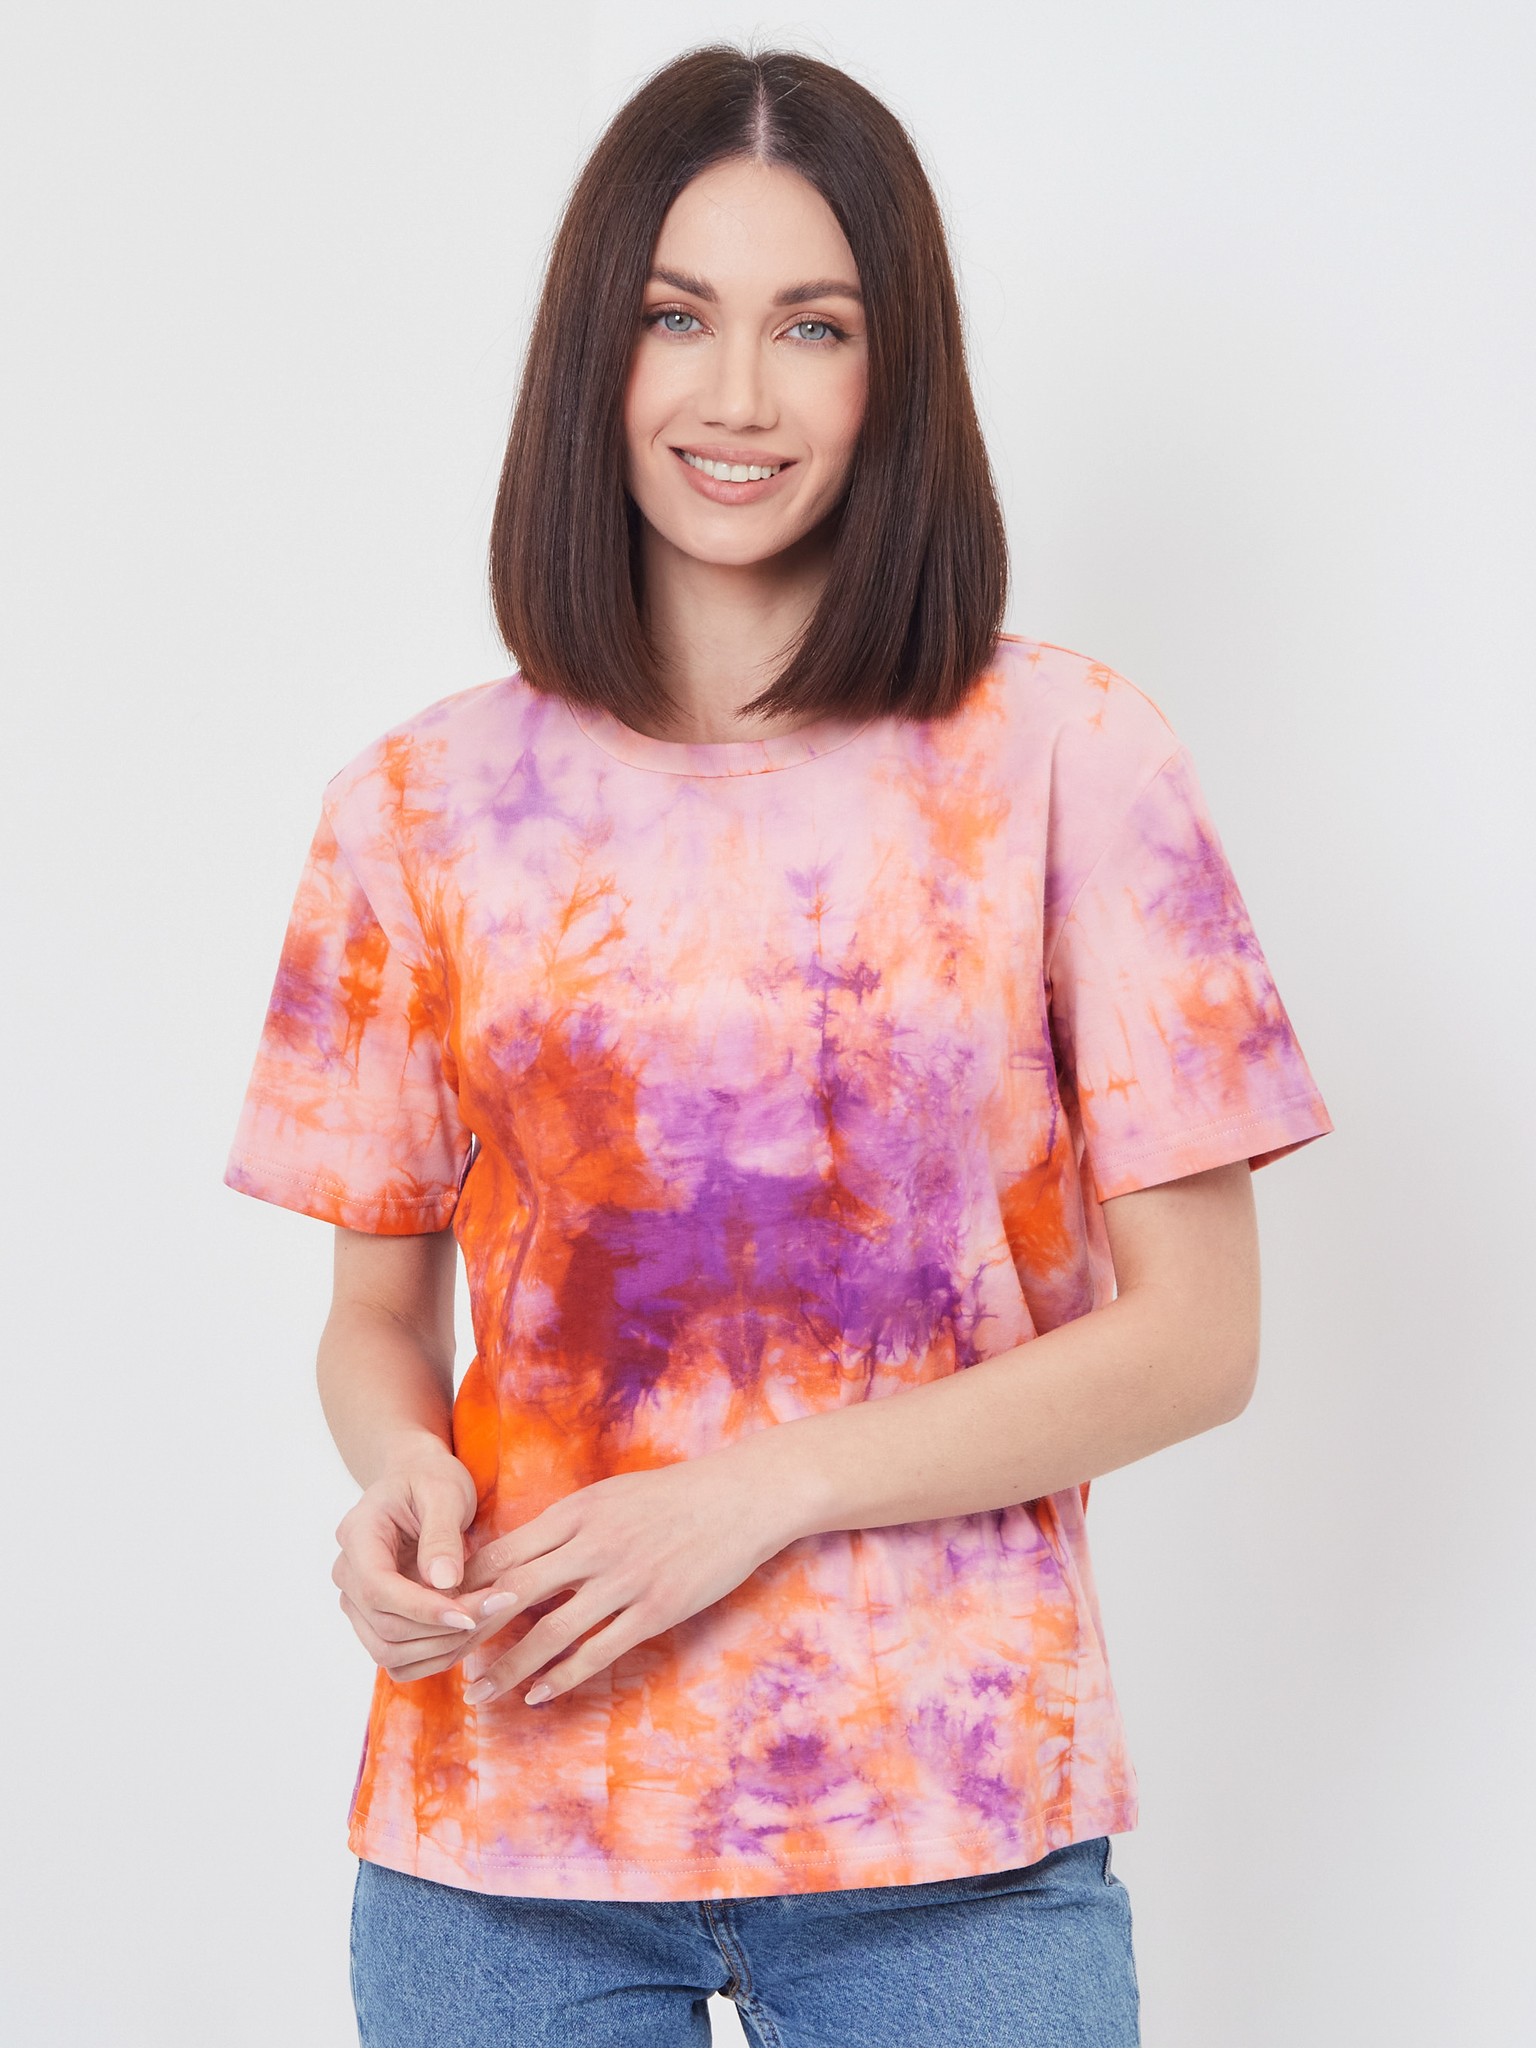 Классическая женская футболка Brandmania в модной расцветке тай-дай